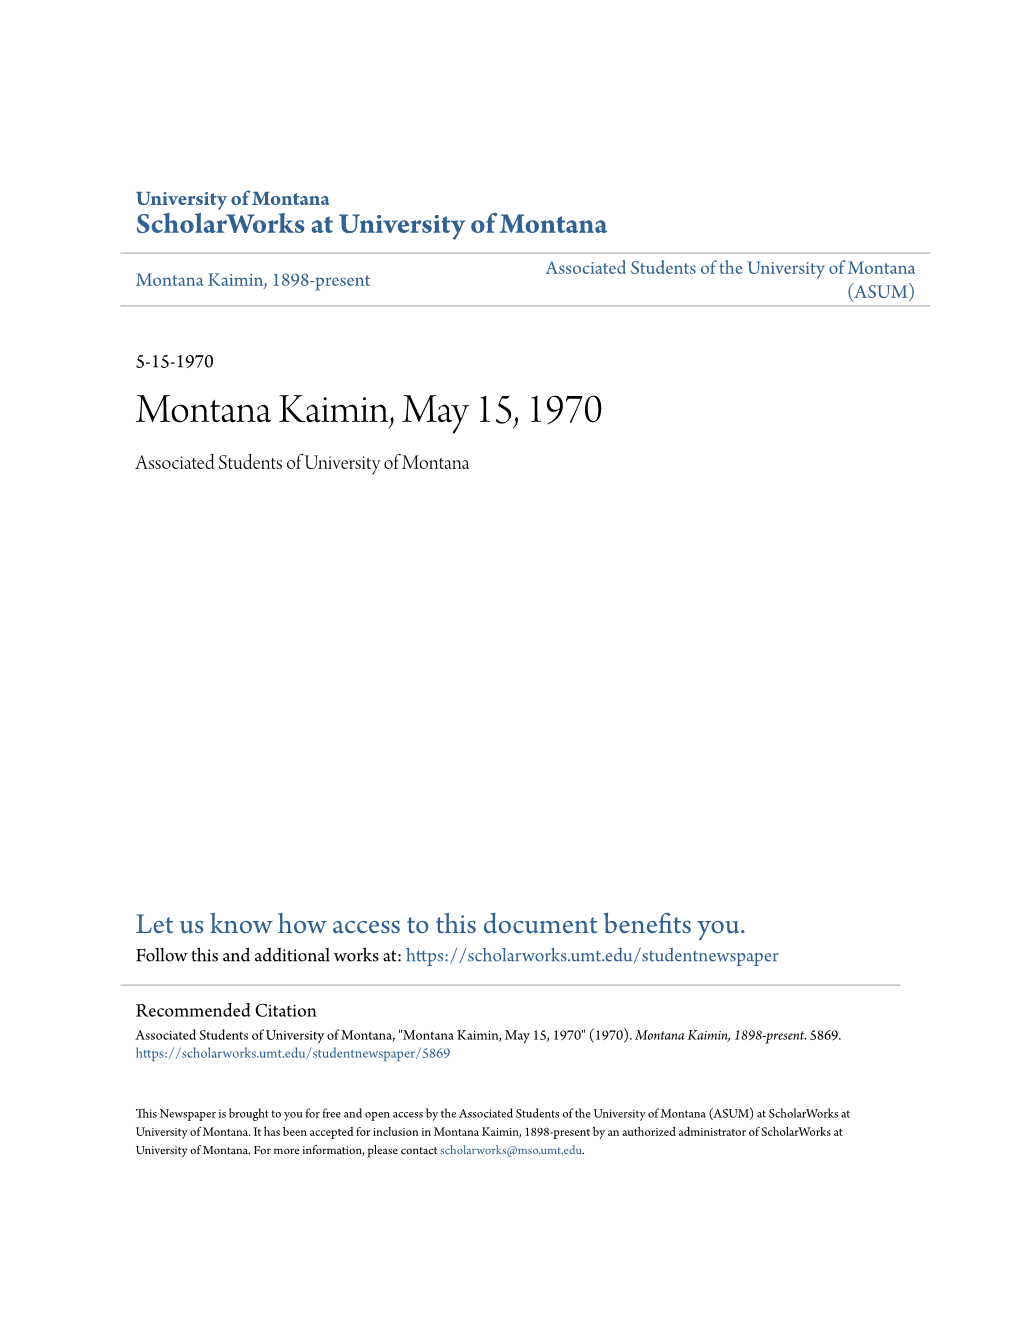 Montana Kaimin, May 15, 1970 Associated Students of University of Montana